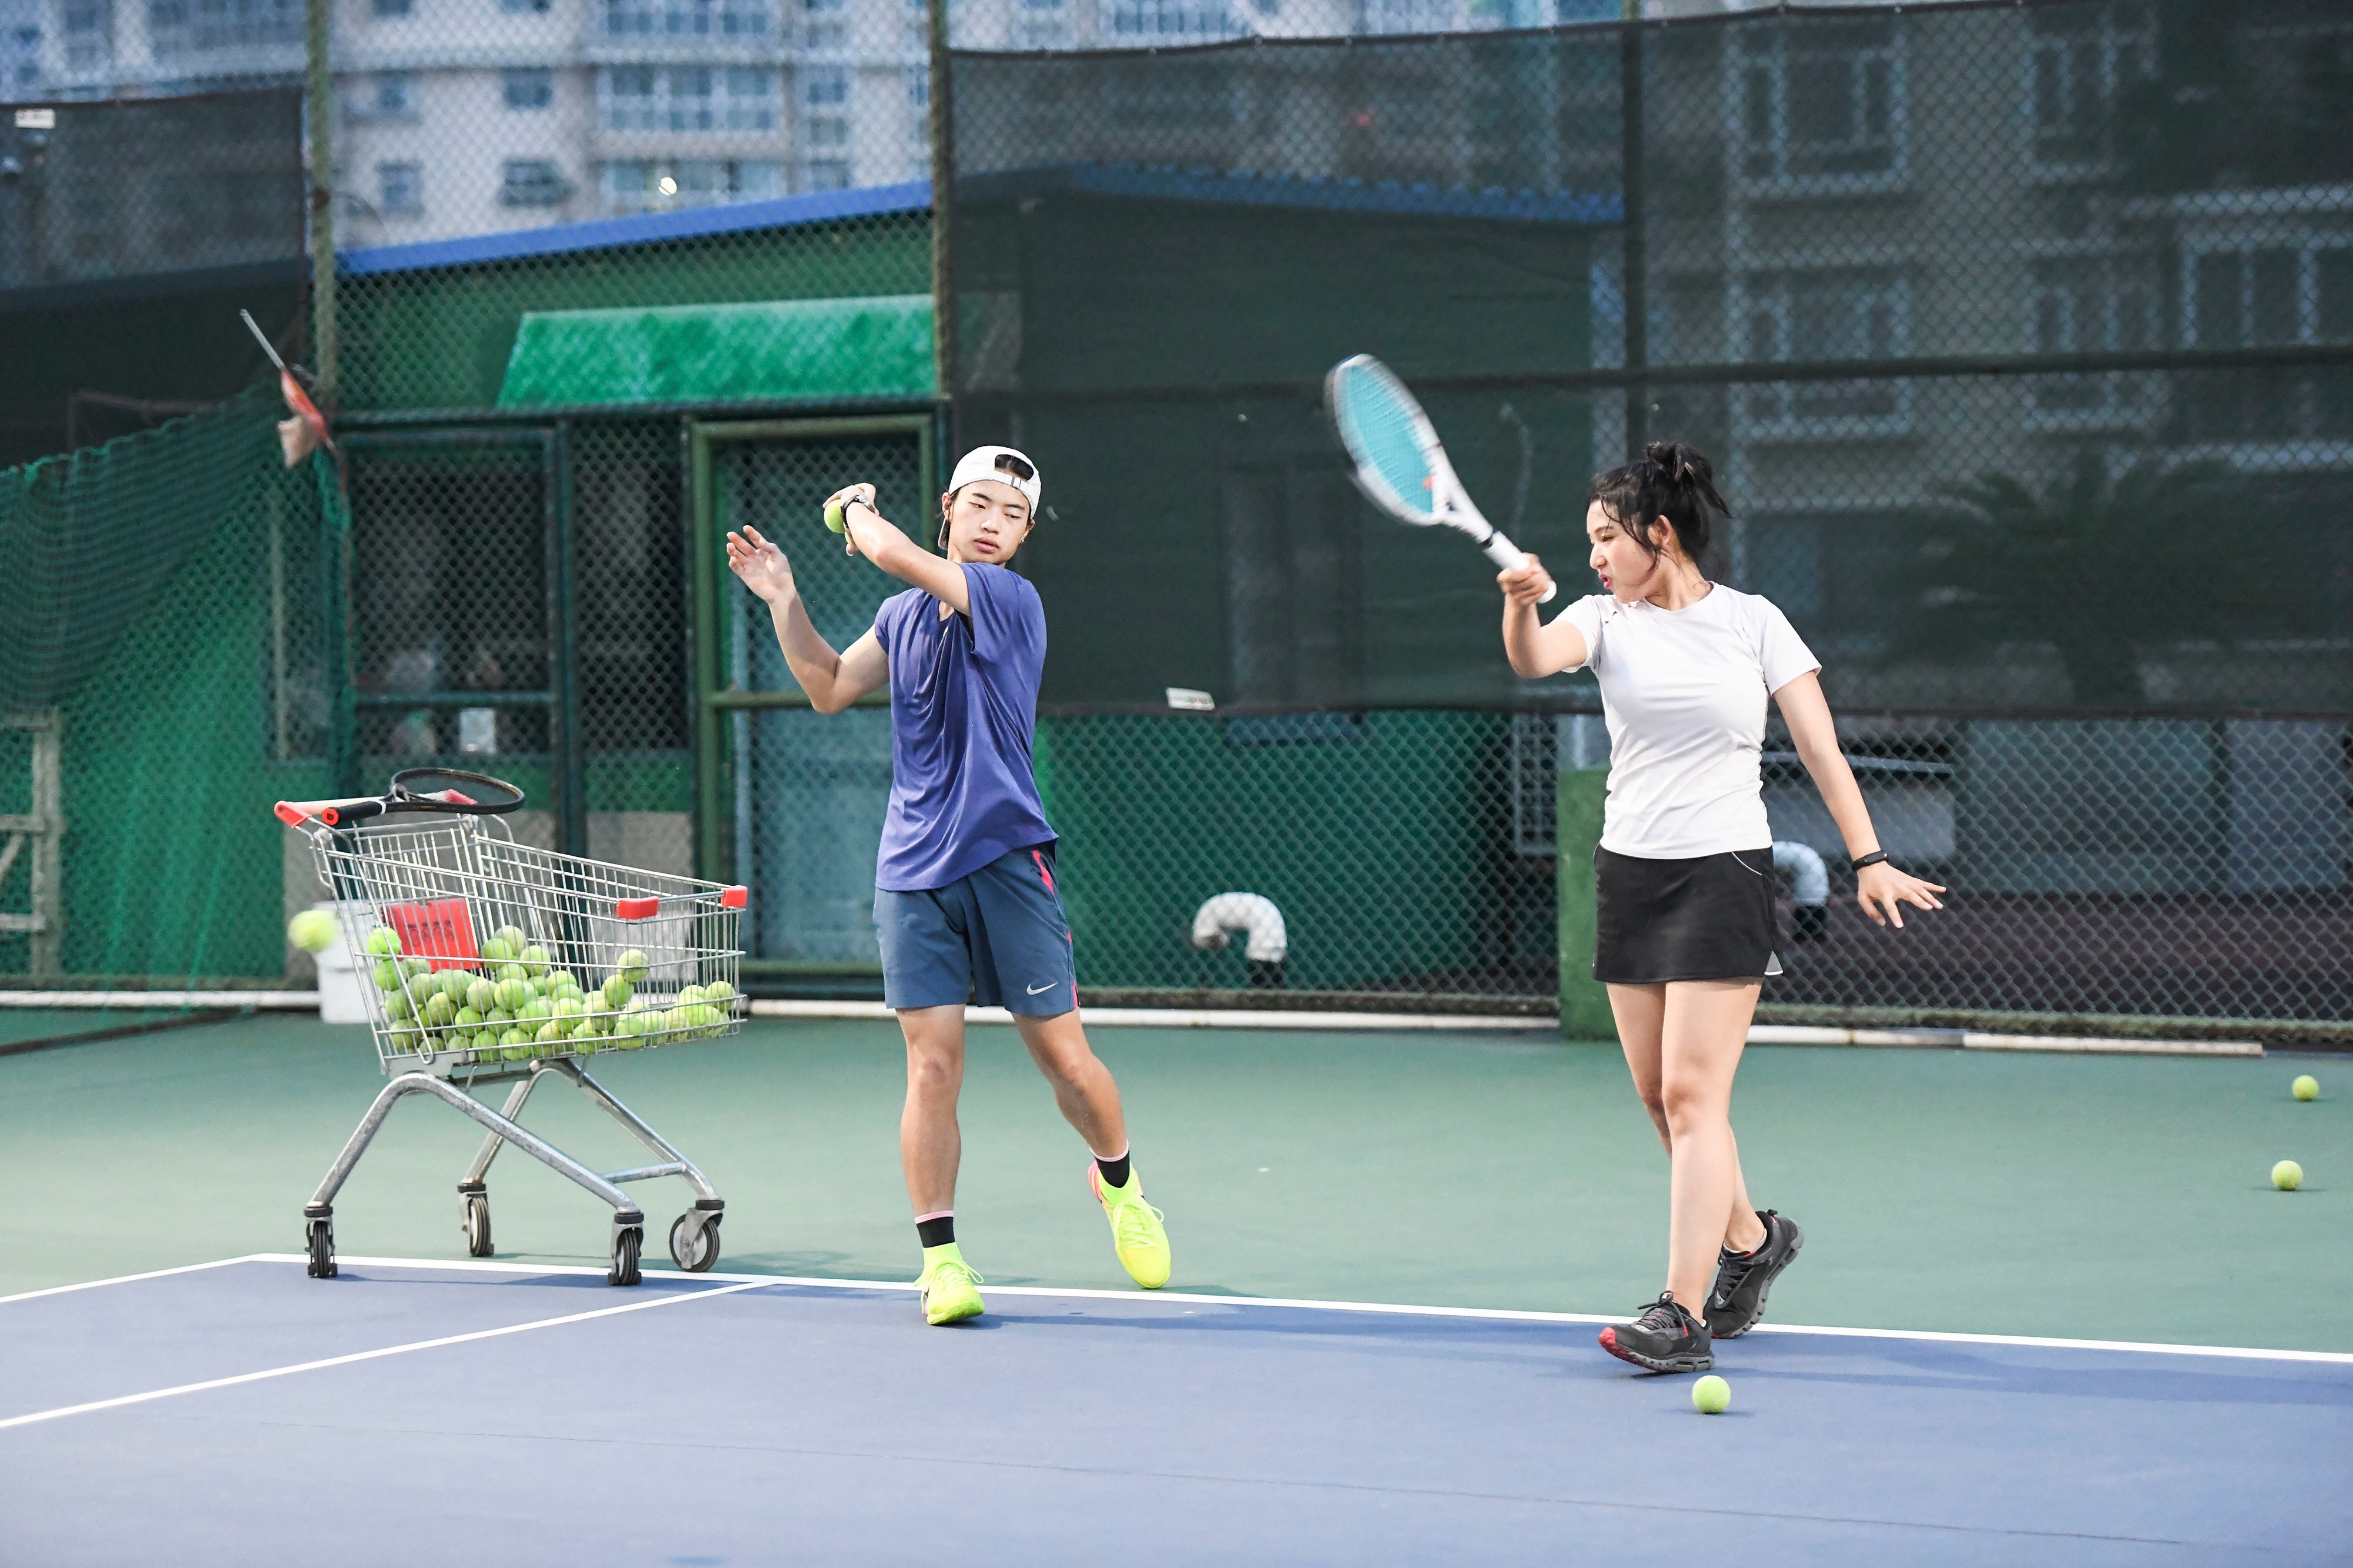 合肥:网球运动在瑶海区悄然兴起,学打网球成为时尚